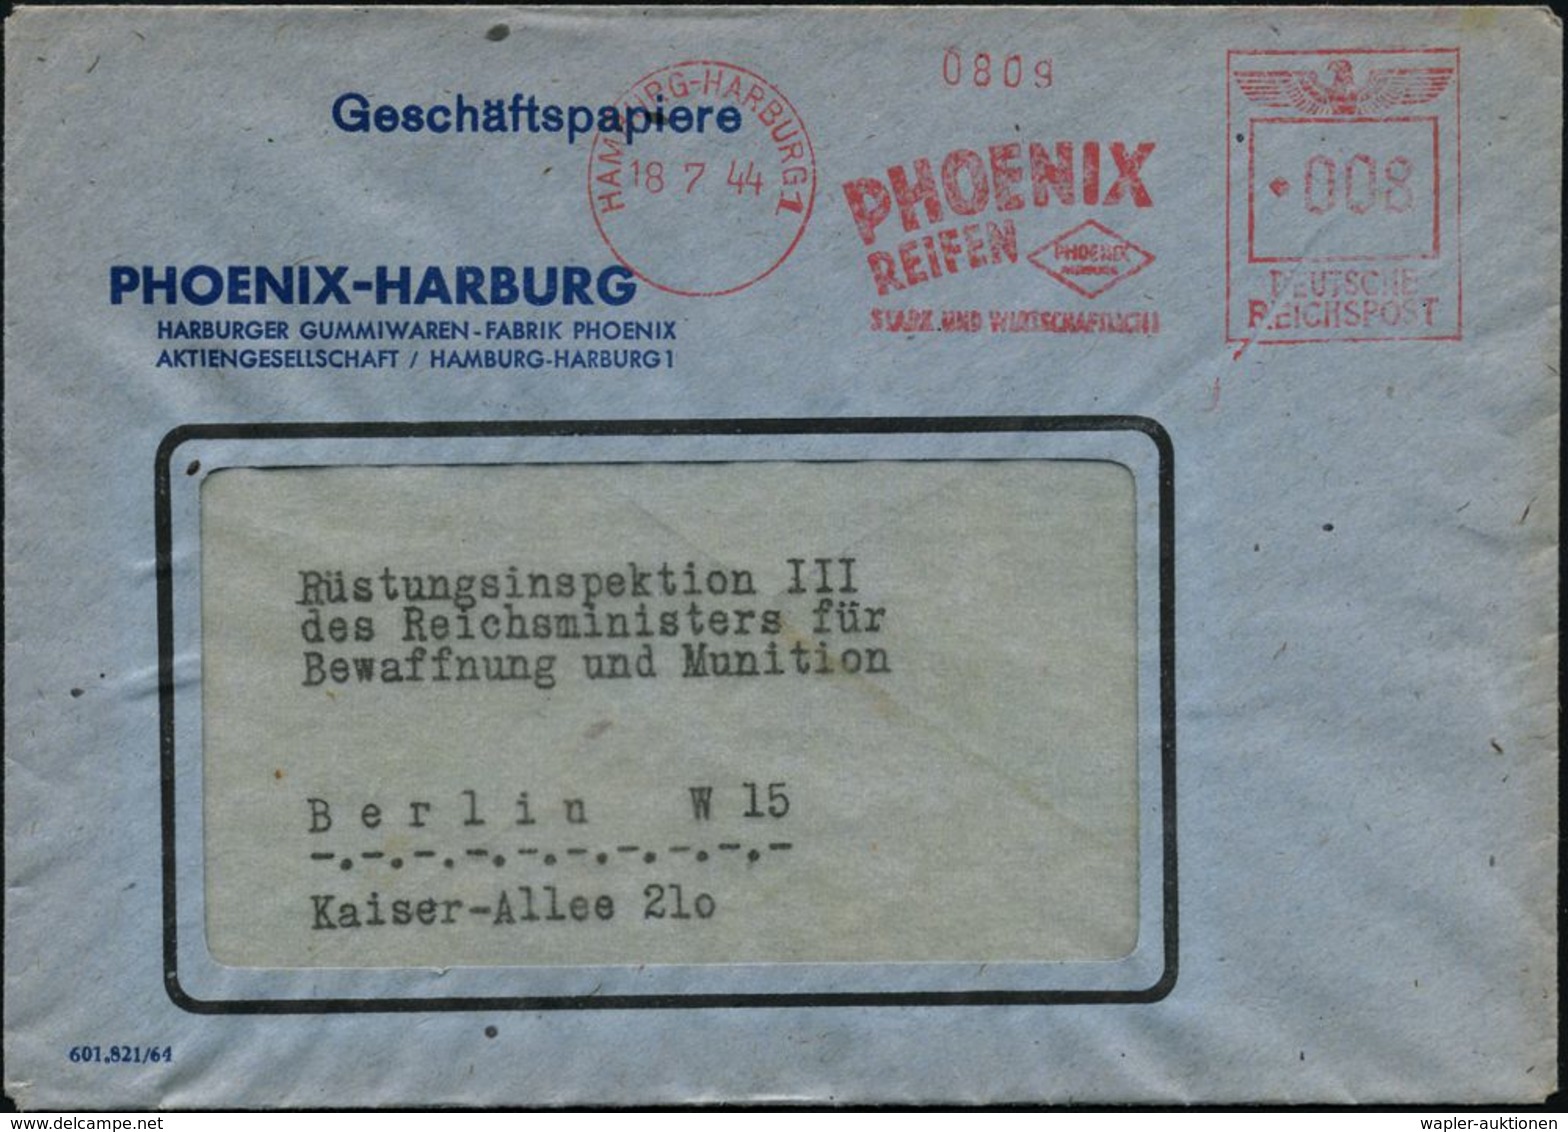 GUMMI / KAUTSCHUK : HAMBURG-HARBURG 1/ PHOENIX/ REIFEN../ STARK U.WIRTSCHAFTLICH 1944 (18.7.) Seltener AFS-Typ "Reichsad - Chemie